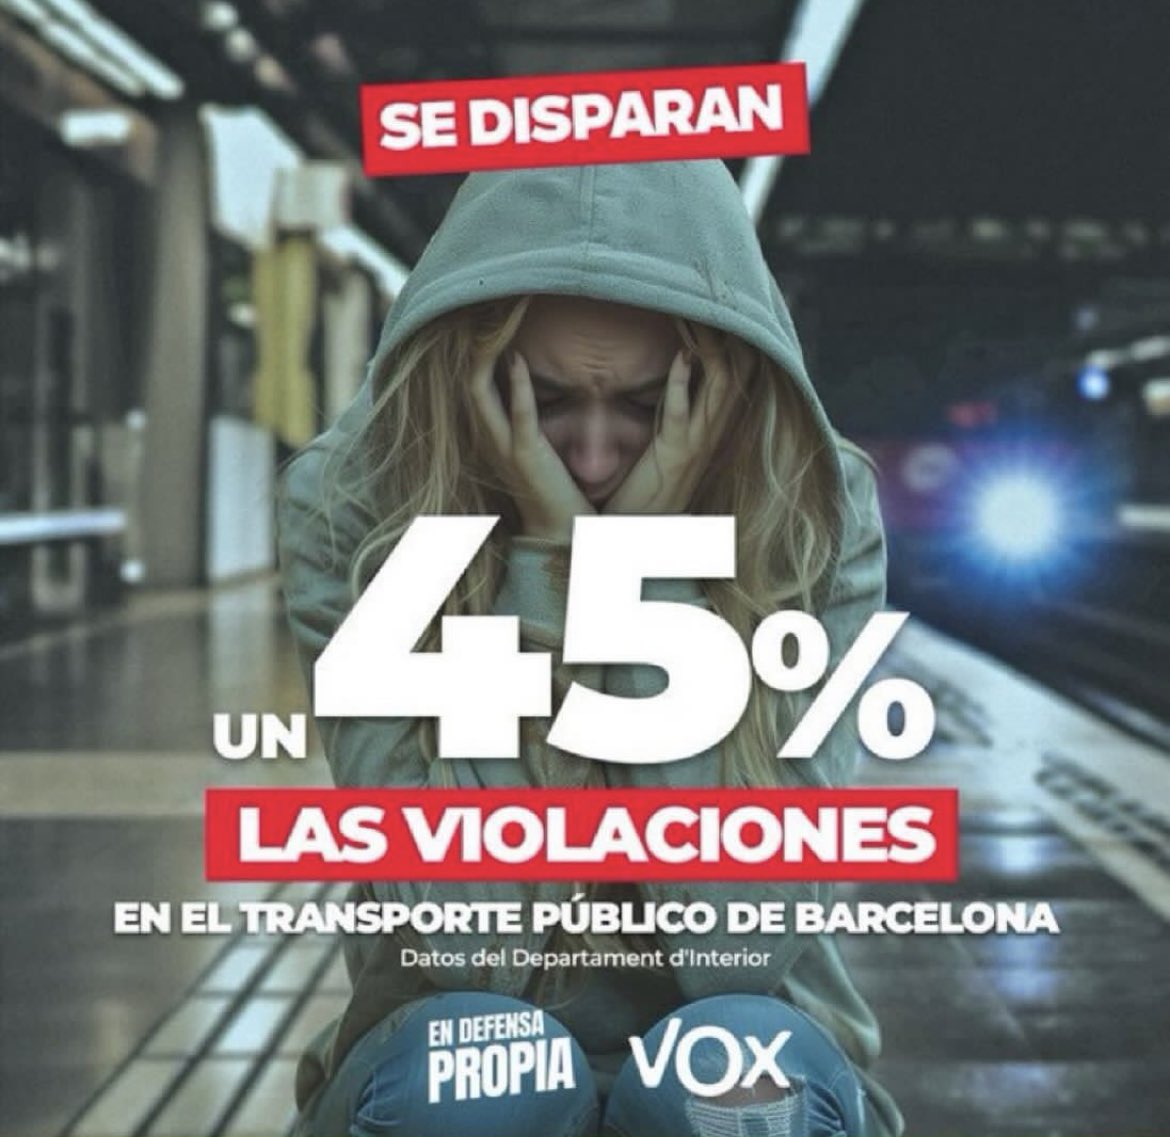 ⛔️Prohiben este cartel de @vox_es en las elecciones de Cataluña. 

🚫Quieren censurar la verdad

🔂Comparte para romper su bloqueo informativo y que llegue a todos los españoles.

#EnDefensaPropia